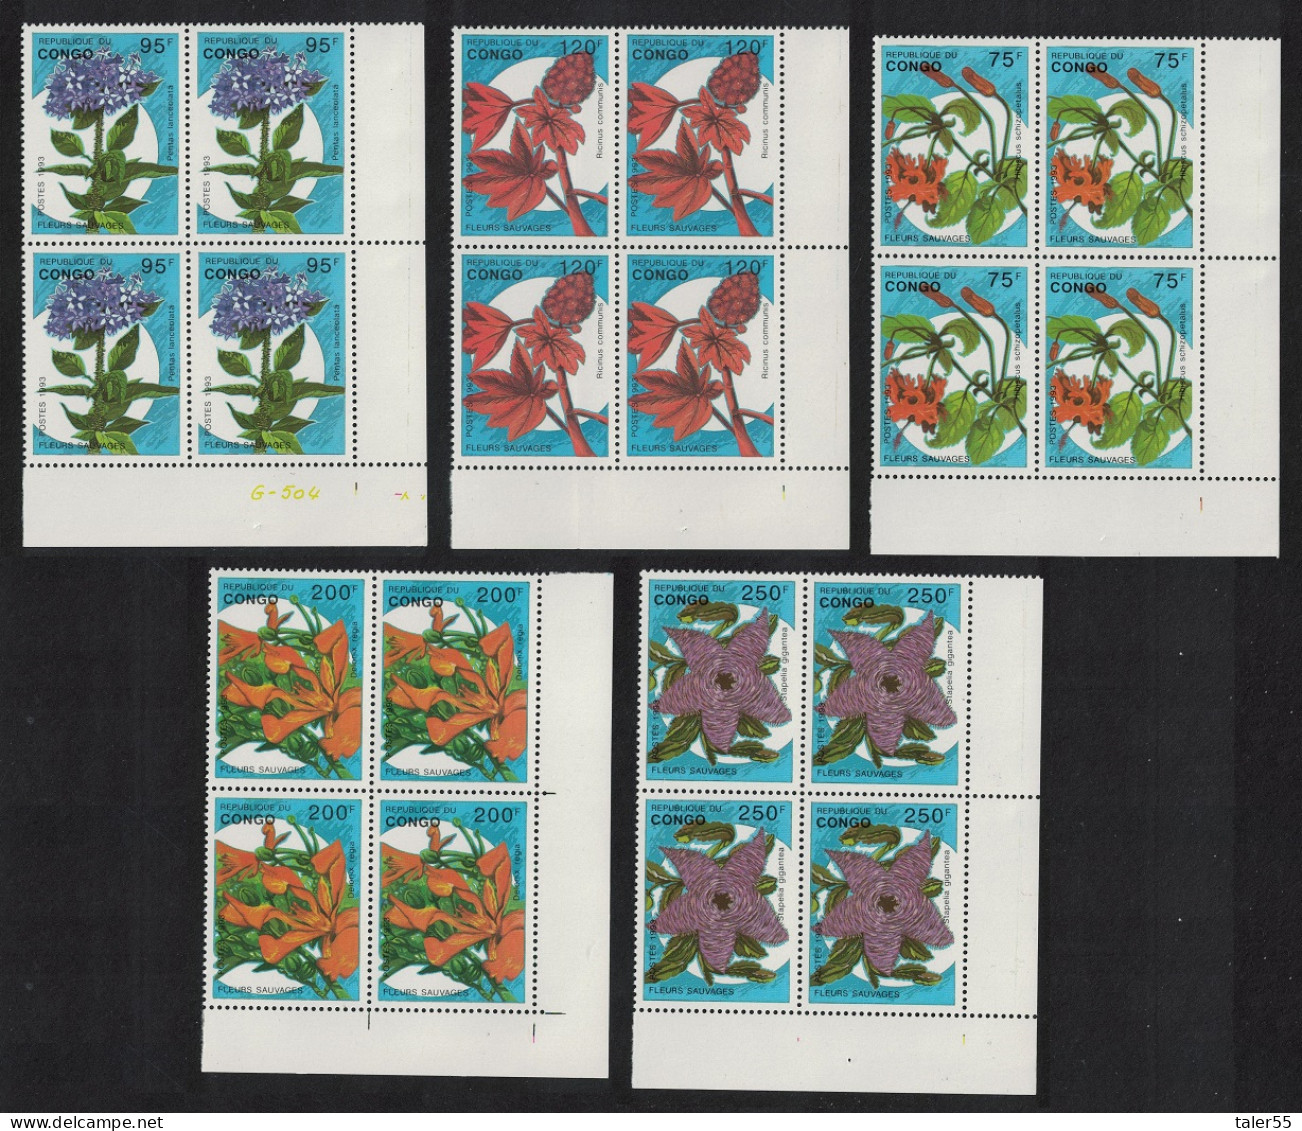 Congo Flowers 5v Corner Blocks Of 4 1993 MNH SG#1375-1379 MI#1387-1391 - Nuovi